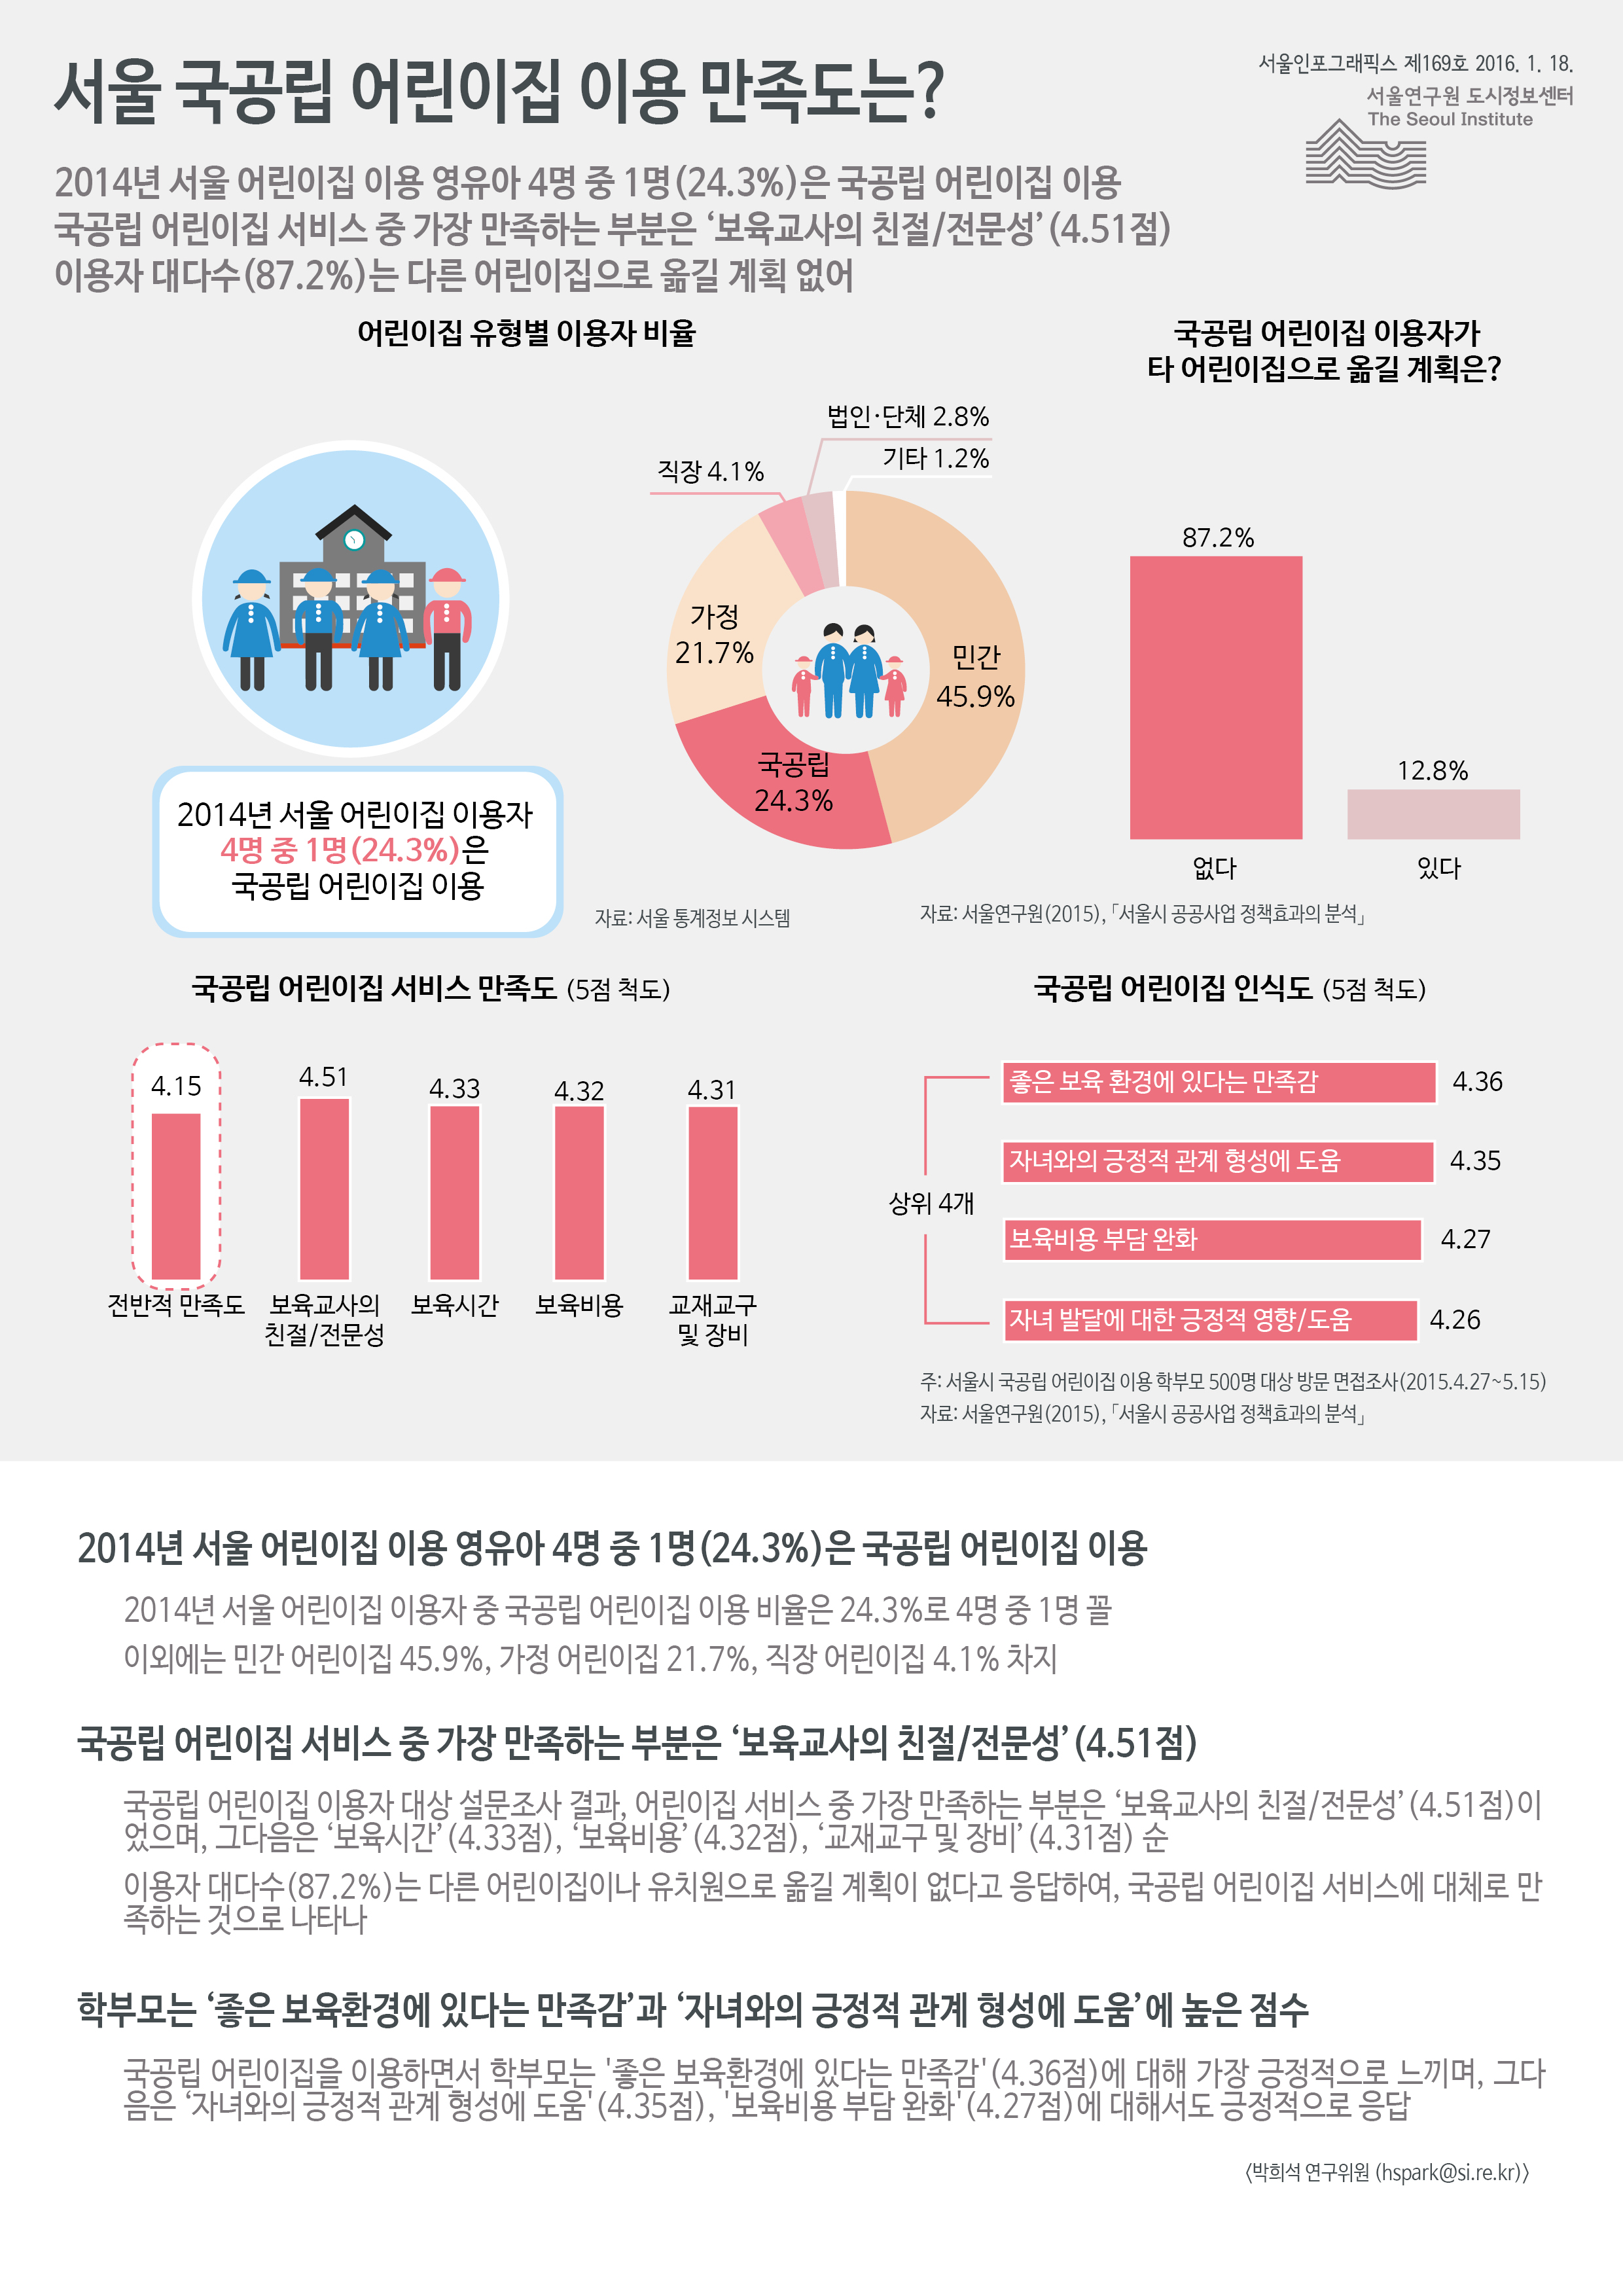 서울 국공립 어린이집 이용 만족도는? 서울인포그래픽스 제 169호 2016년 1월 18일 2014년 서울 어린이집 이용 영유아 4명 중 1명(24.3%)은 국공립 어린이집 이용. 국공립 어린이집 서비스 중 가장 만족하는 부분은 ‘보육교사의 친절/전문성’(4.51점). 이용자 대다수(87.2%)는 다른 어린이집으로 옮길 계획이 없음으로 정리될 수 있습니다. 인포그래픽으로 제공되는 그래픽은 하단에 표로 자세히 제공됩니다.